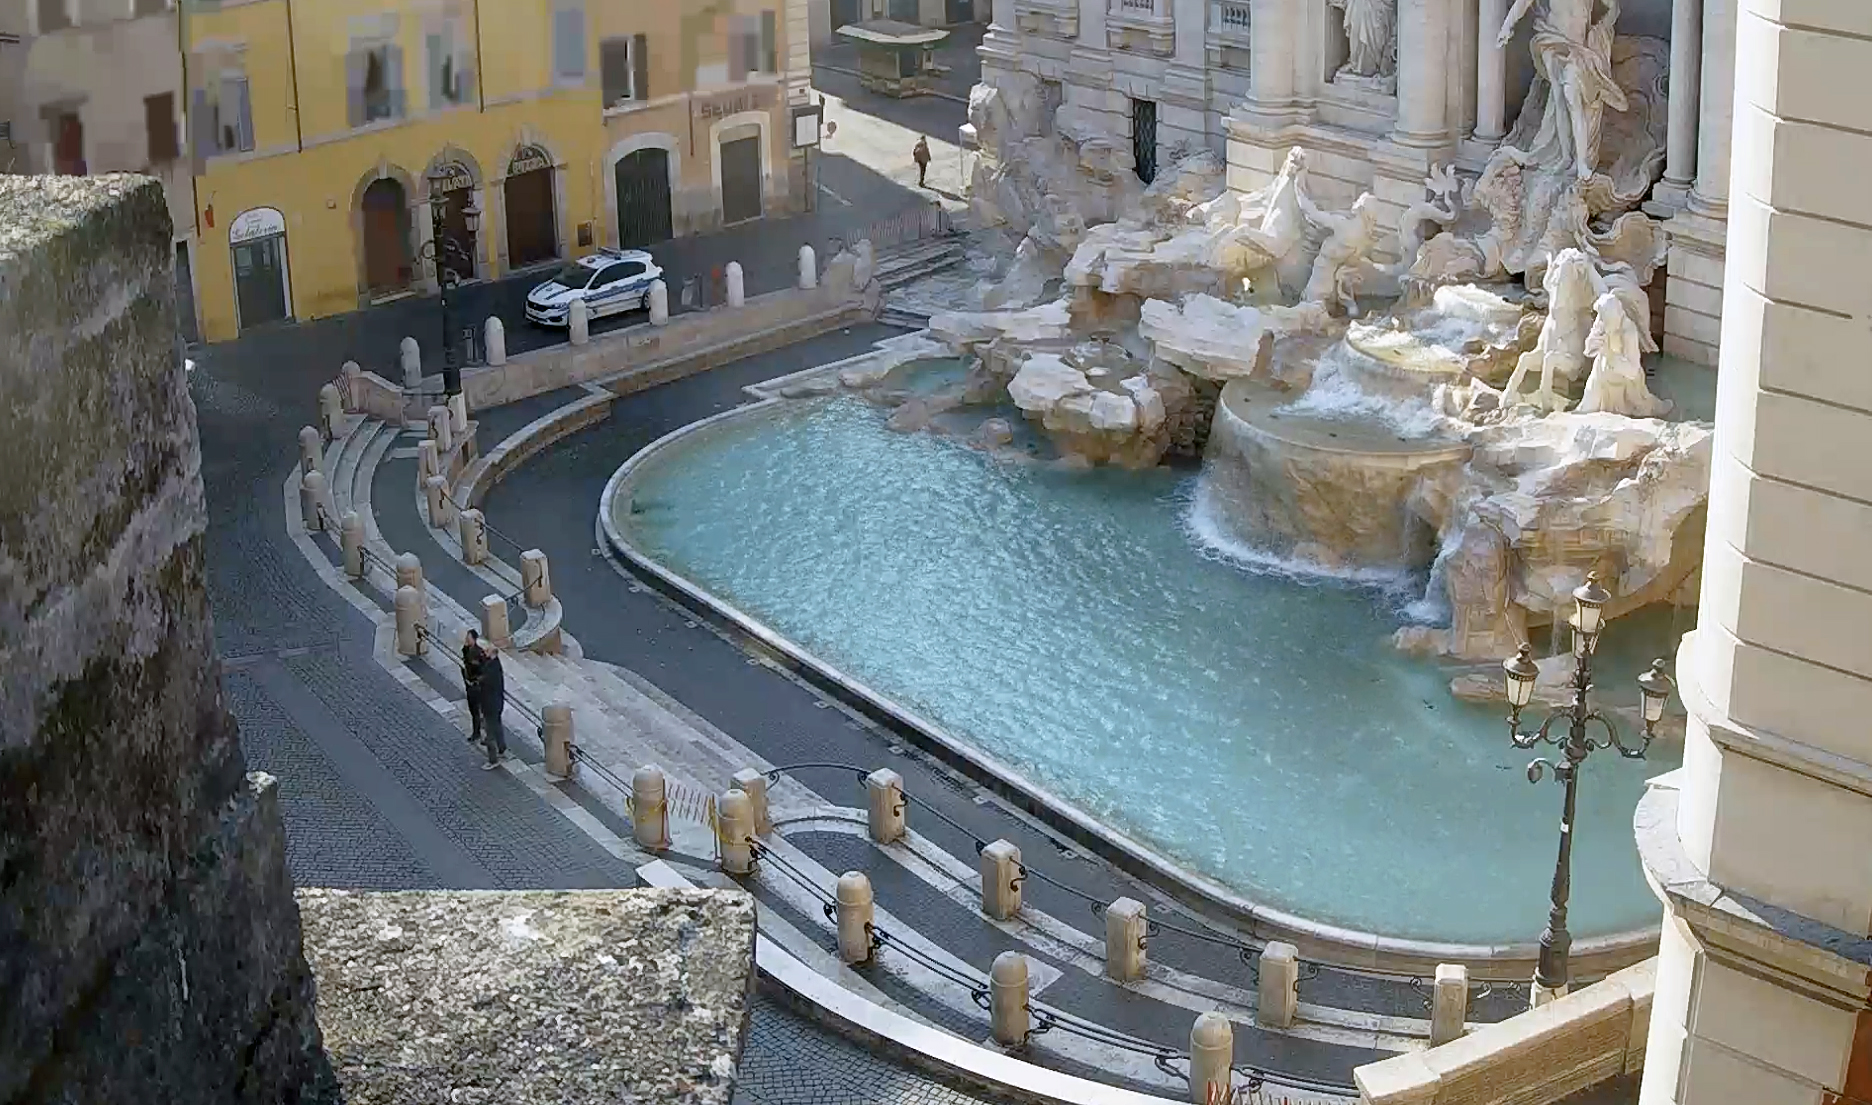 Fontana di Trevi, Rome, Italy. April 12, 2020, 8:37:49 AM PST